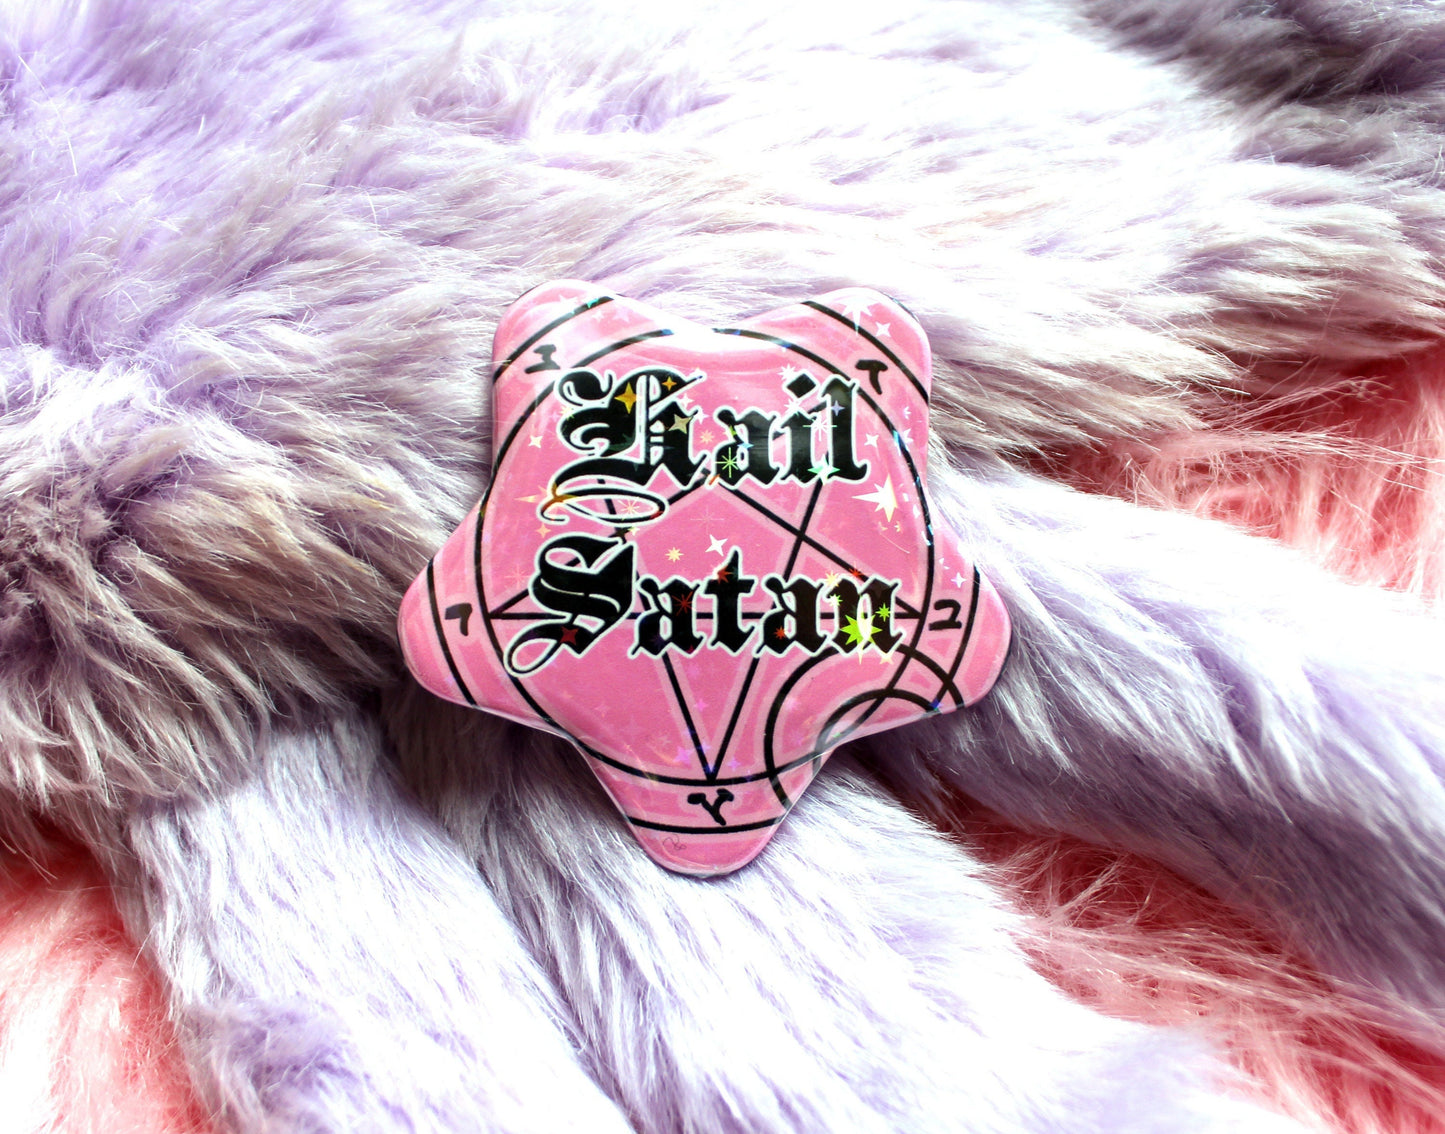 Hail Satan Pentagram Star Badges (55mm)